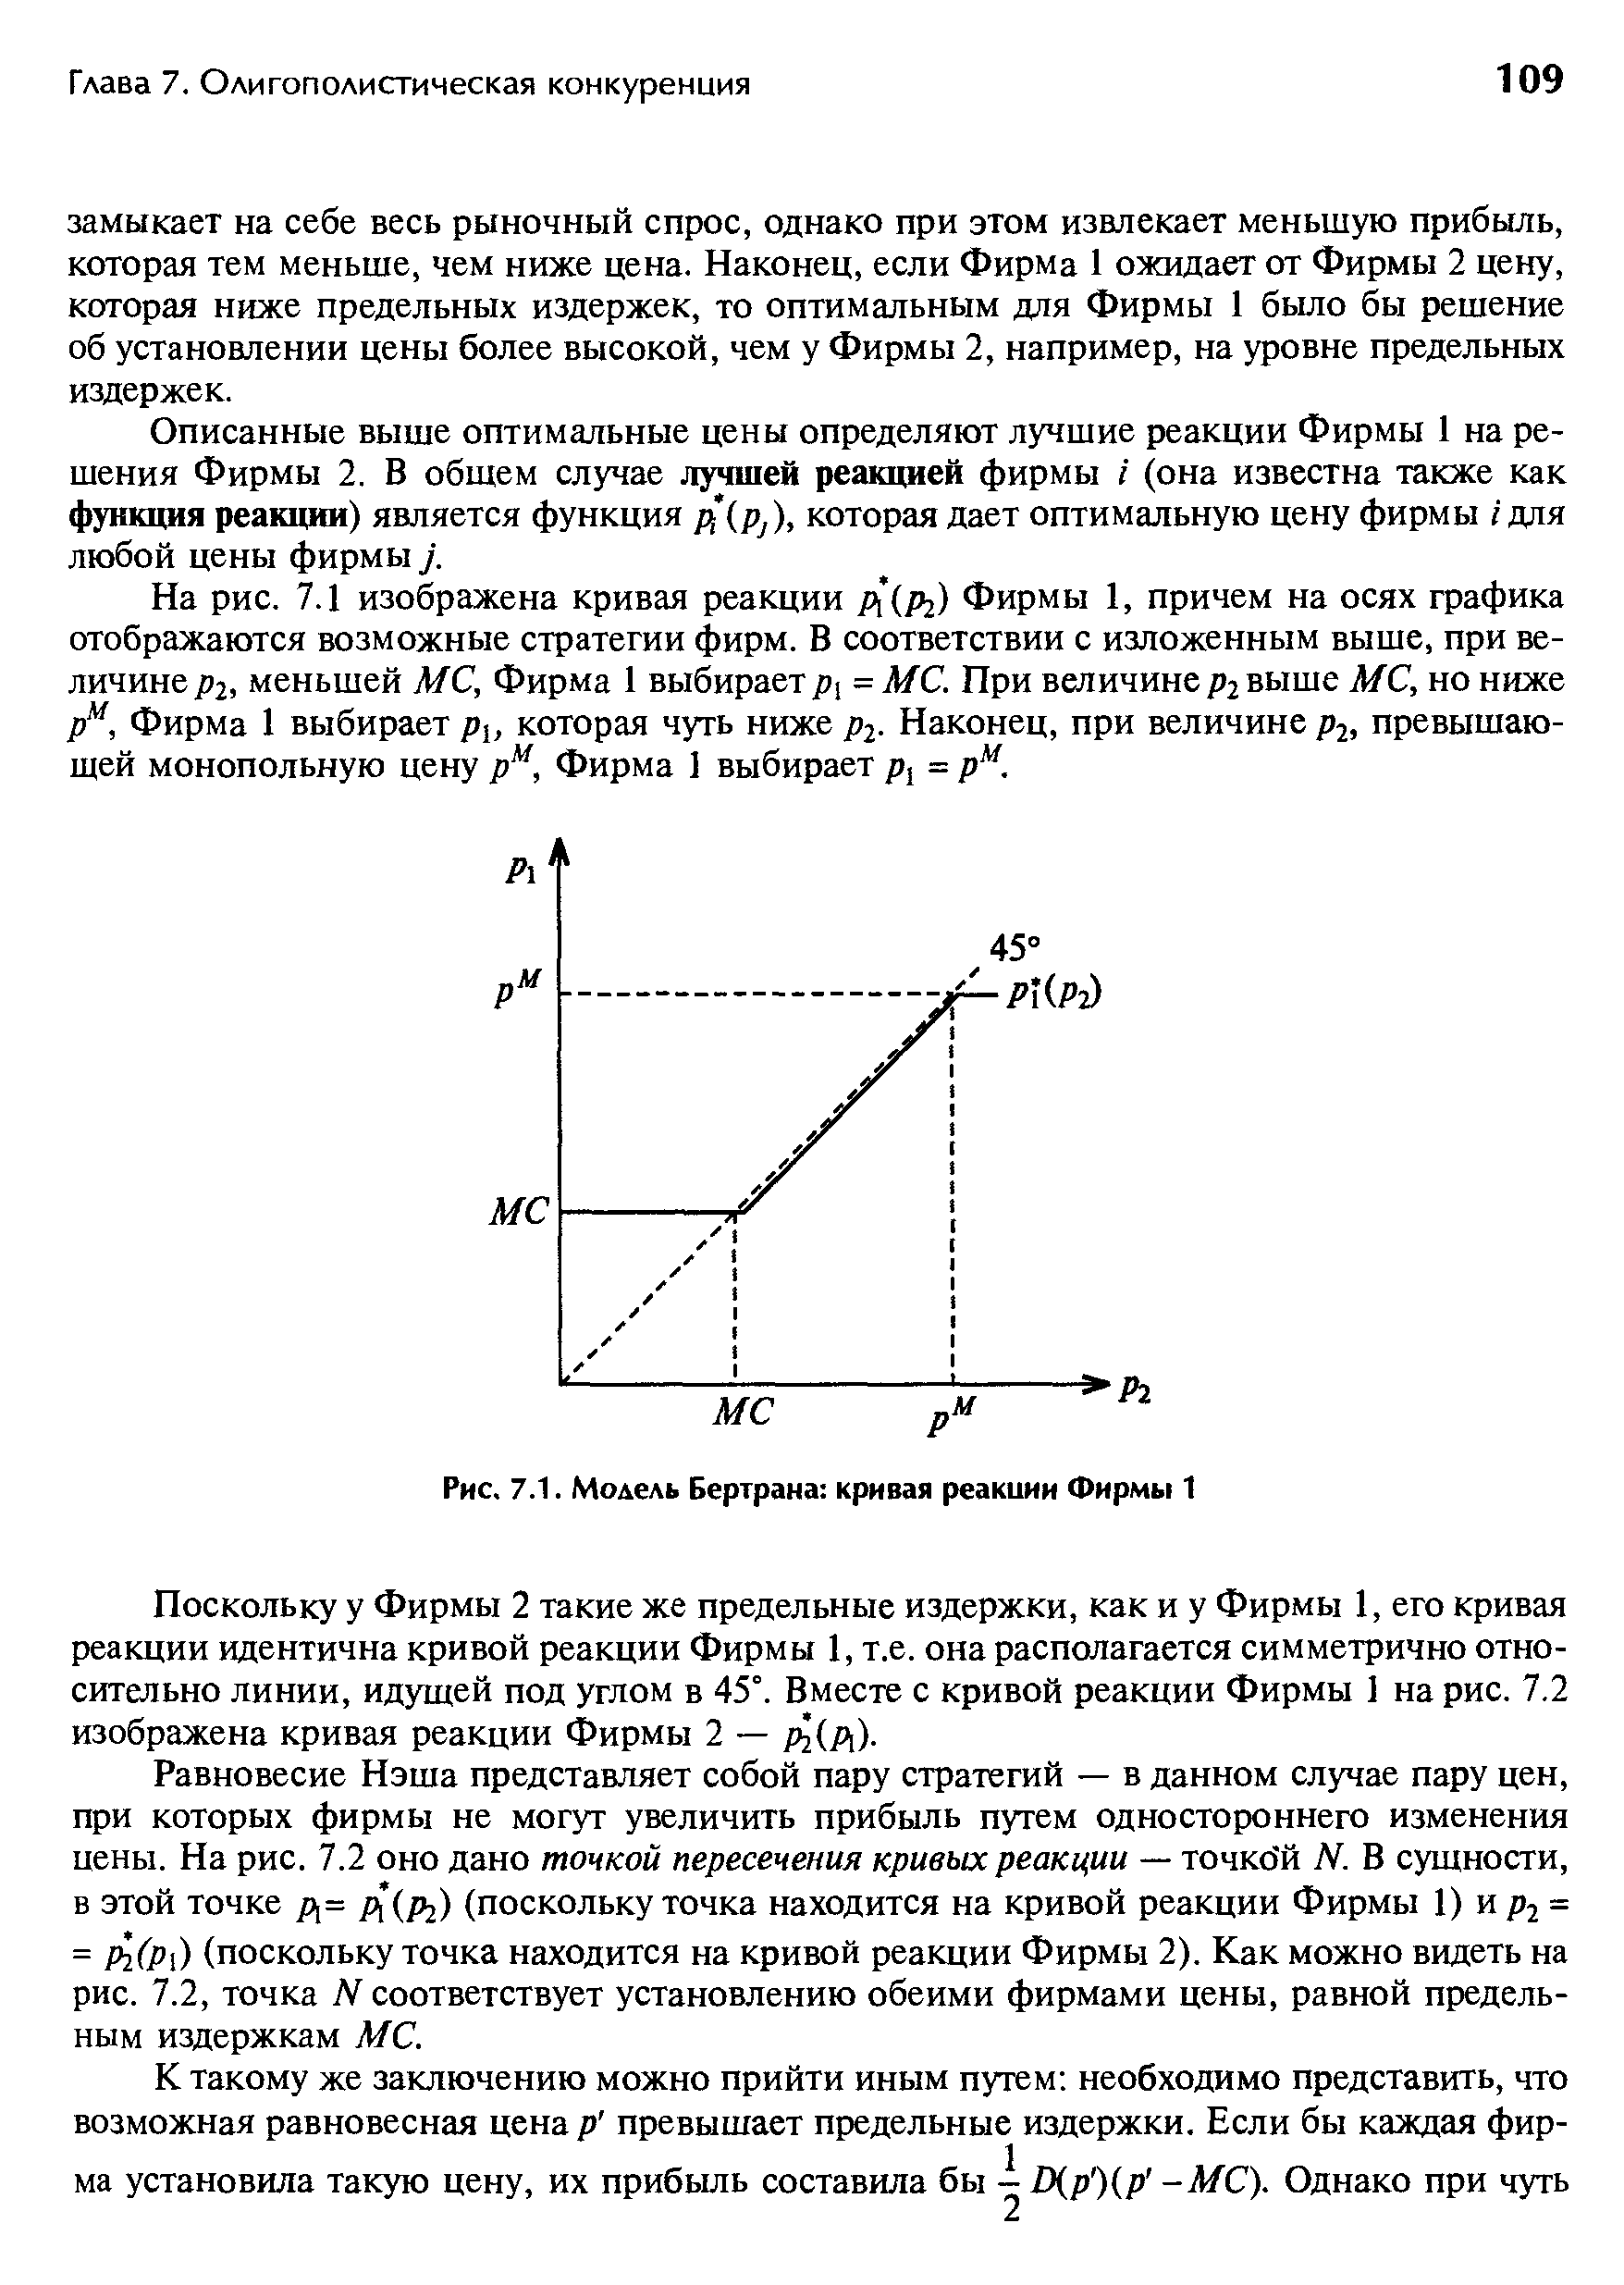 Рис. 7.1. Модель Бертрана кривая реакции Фирмы 1
